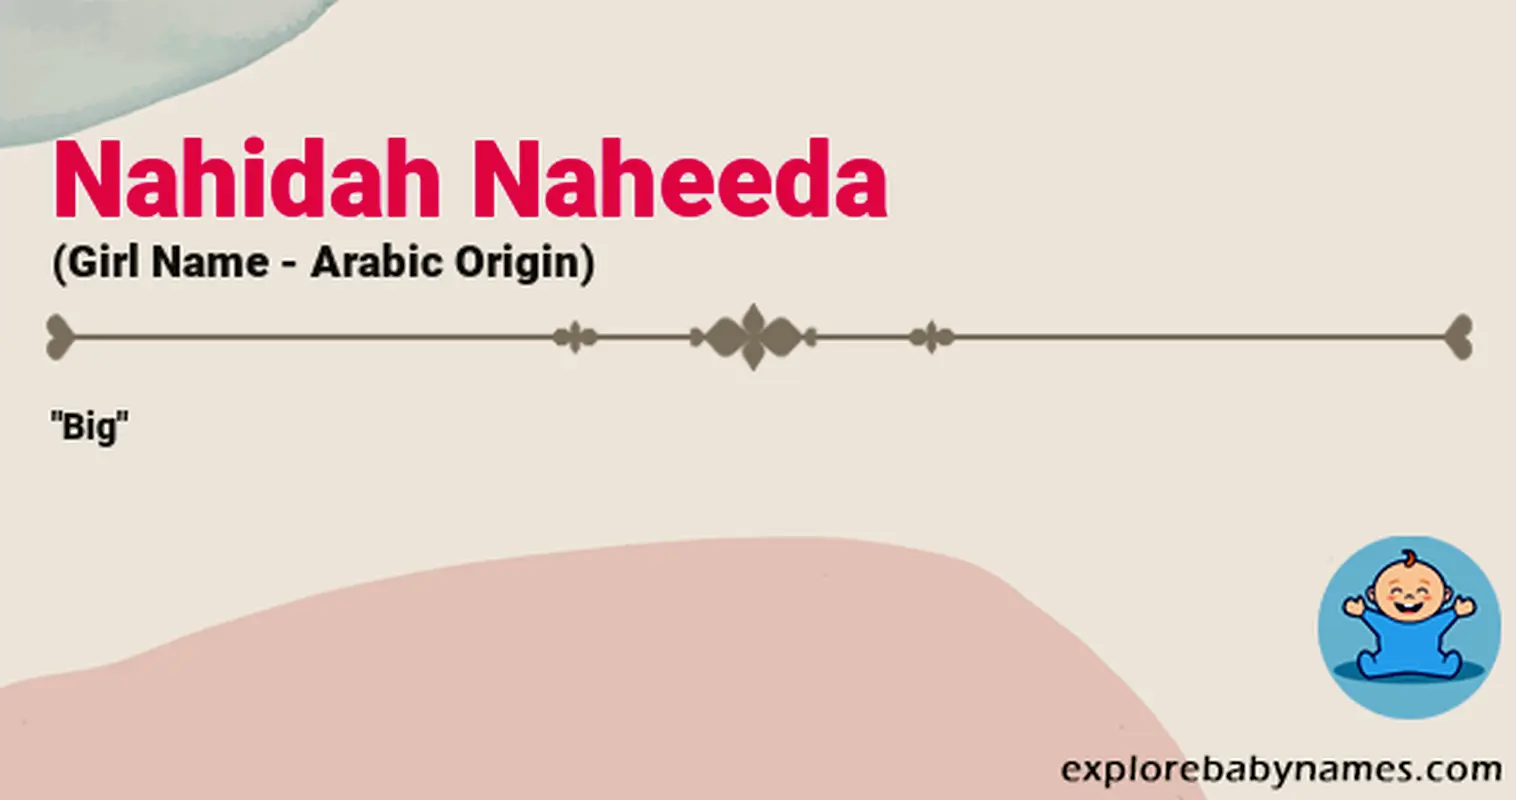 Meaning of Nahidah Naheeda